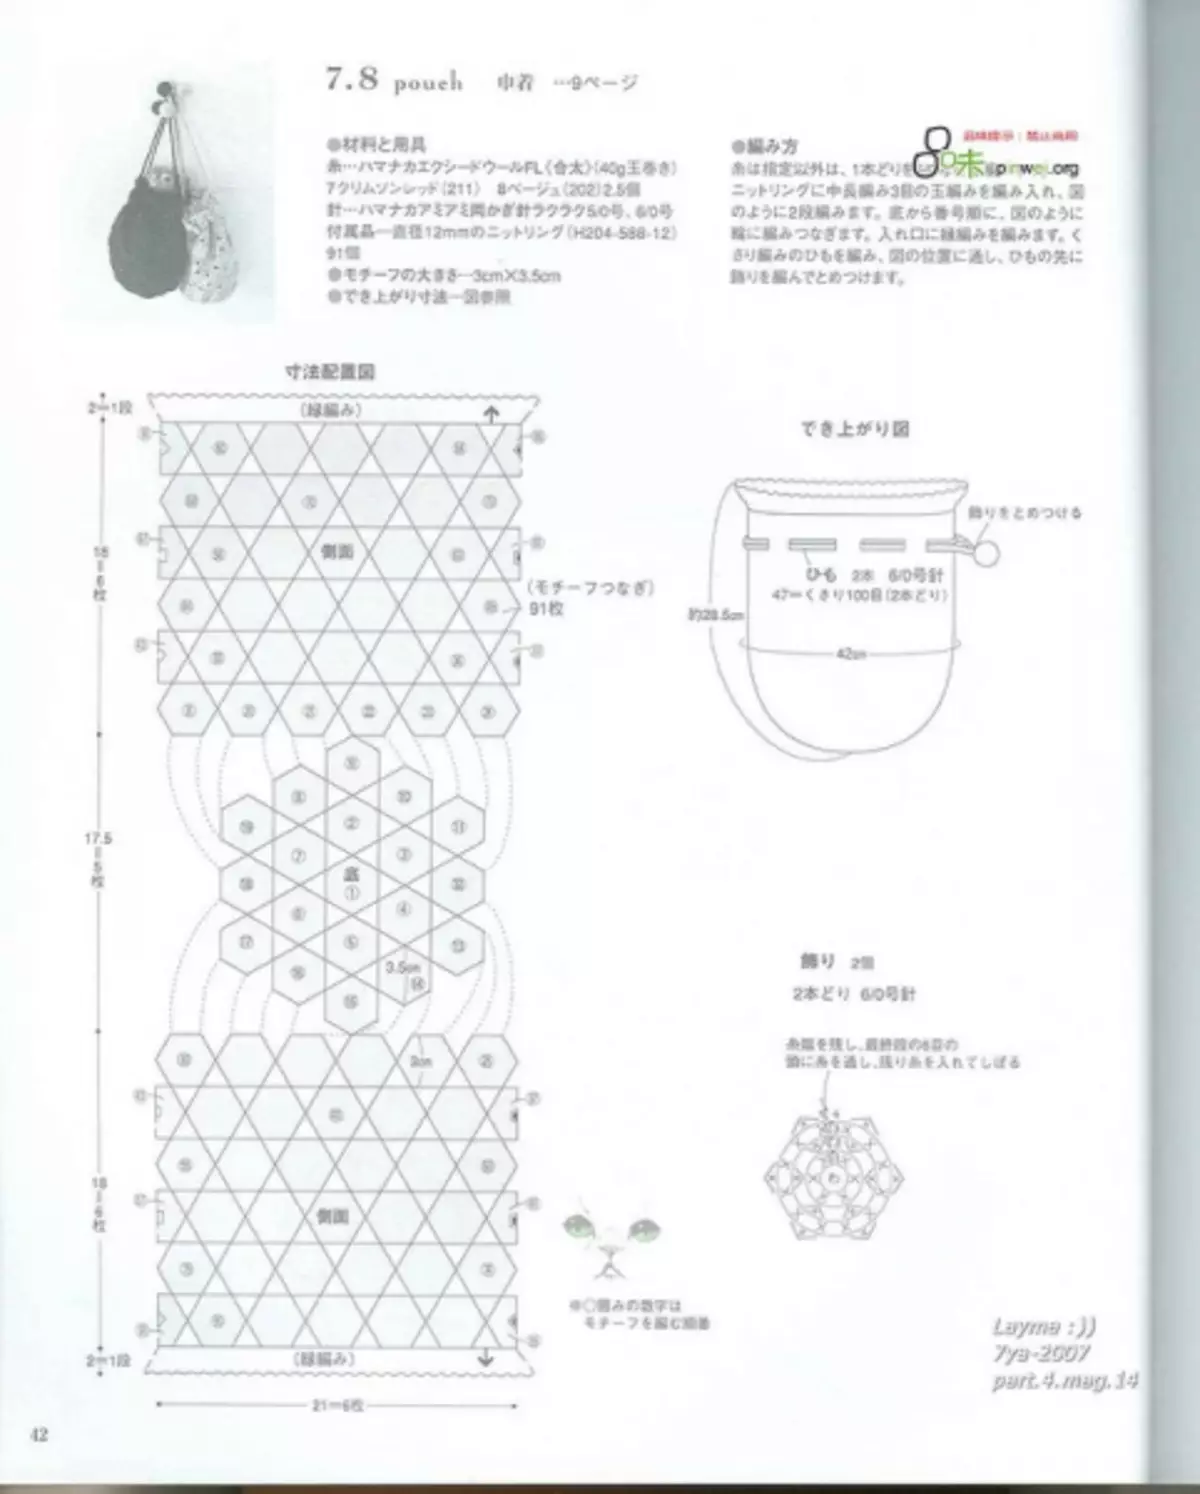 鉤針編織。日本雜誌